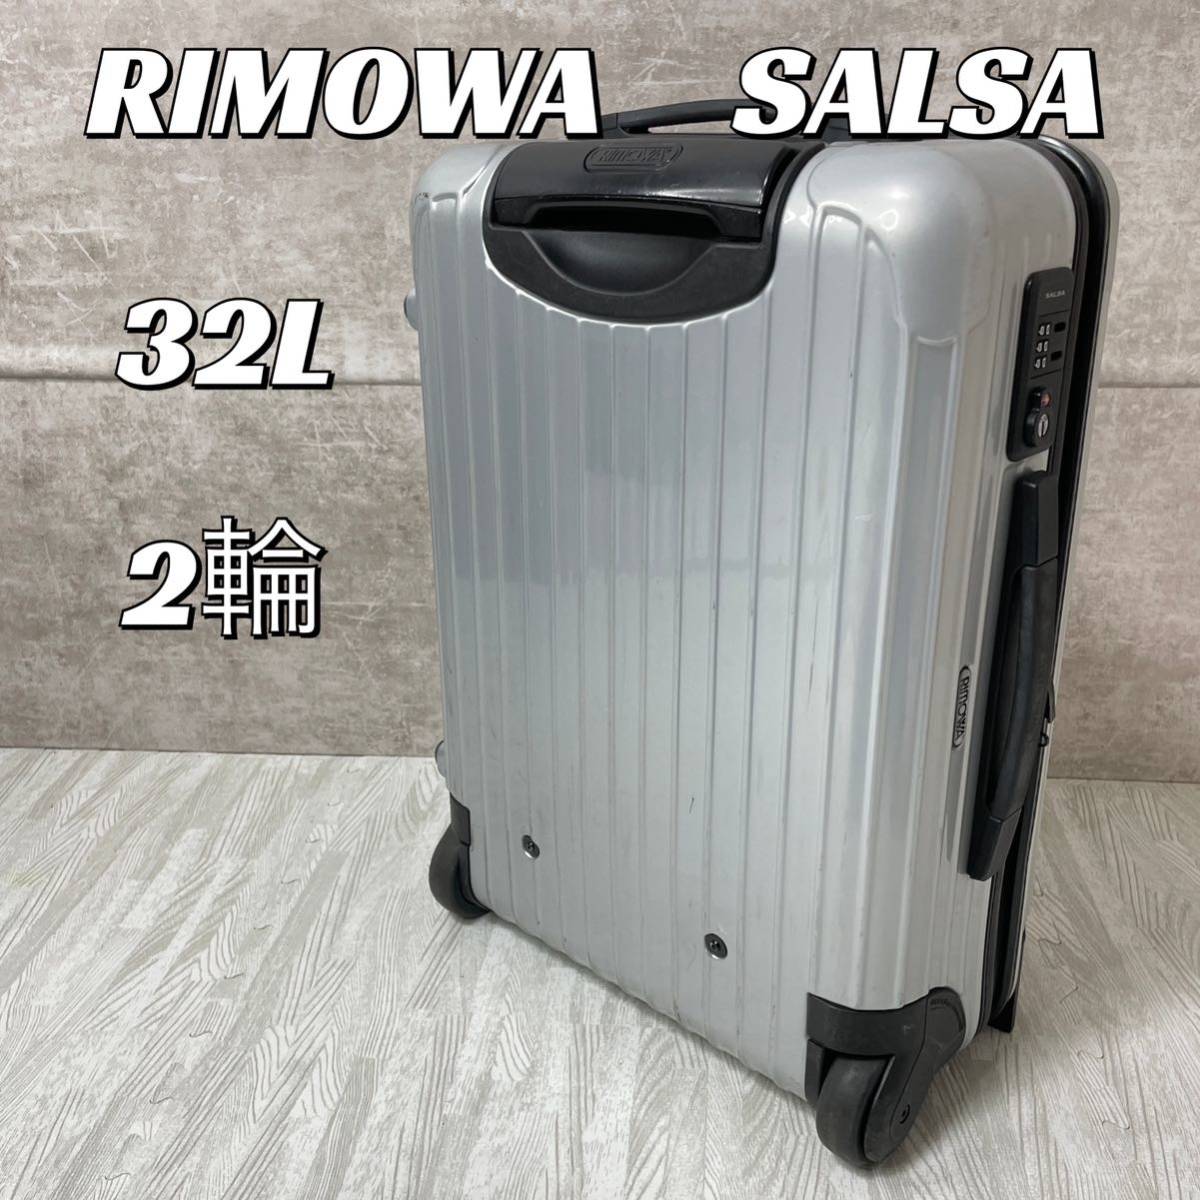 RIMOWA リモワ スーツケース 2輪 33L サルサ SALSA シルバー - 旅行用